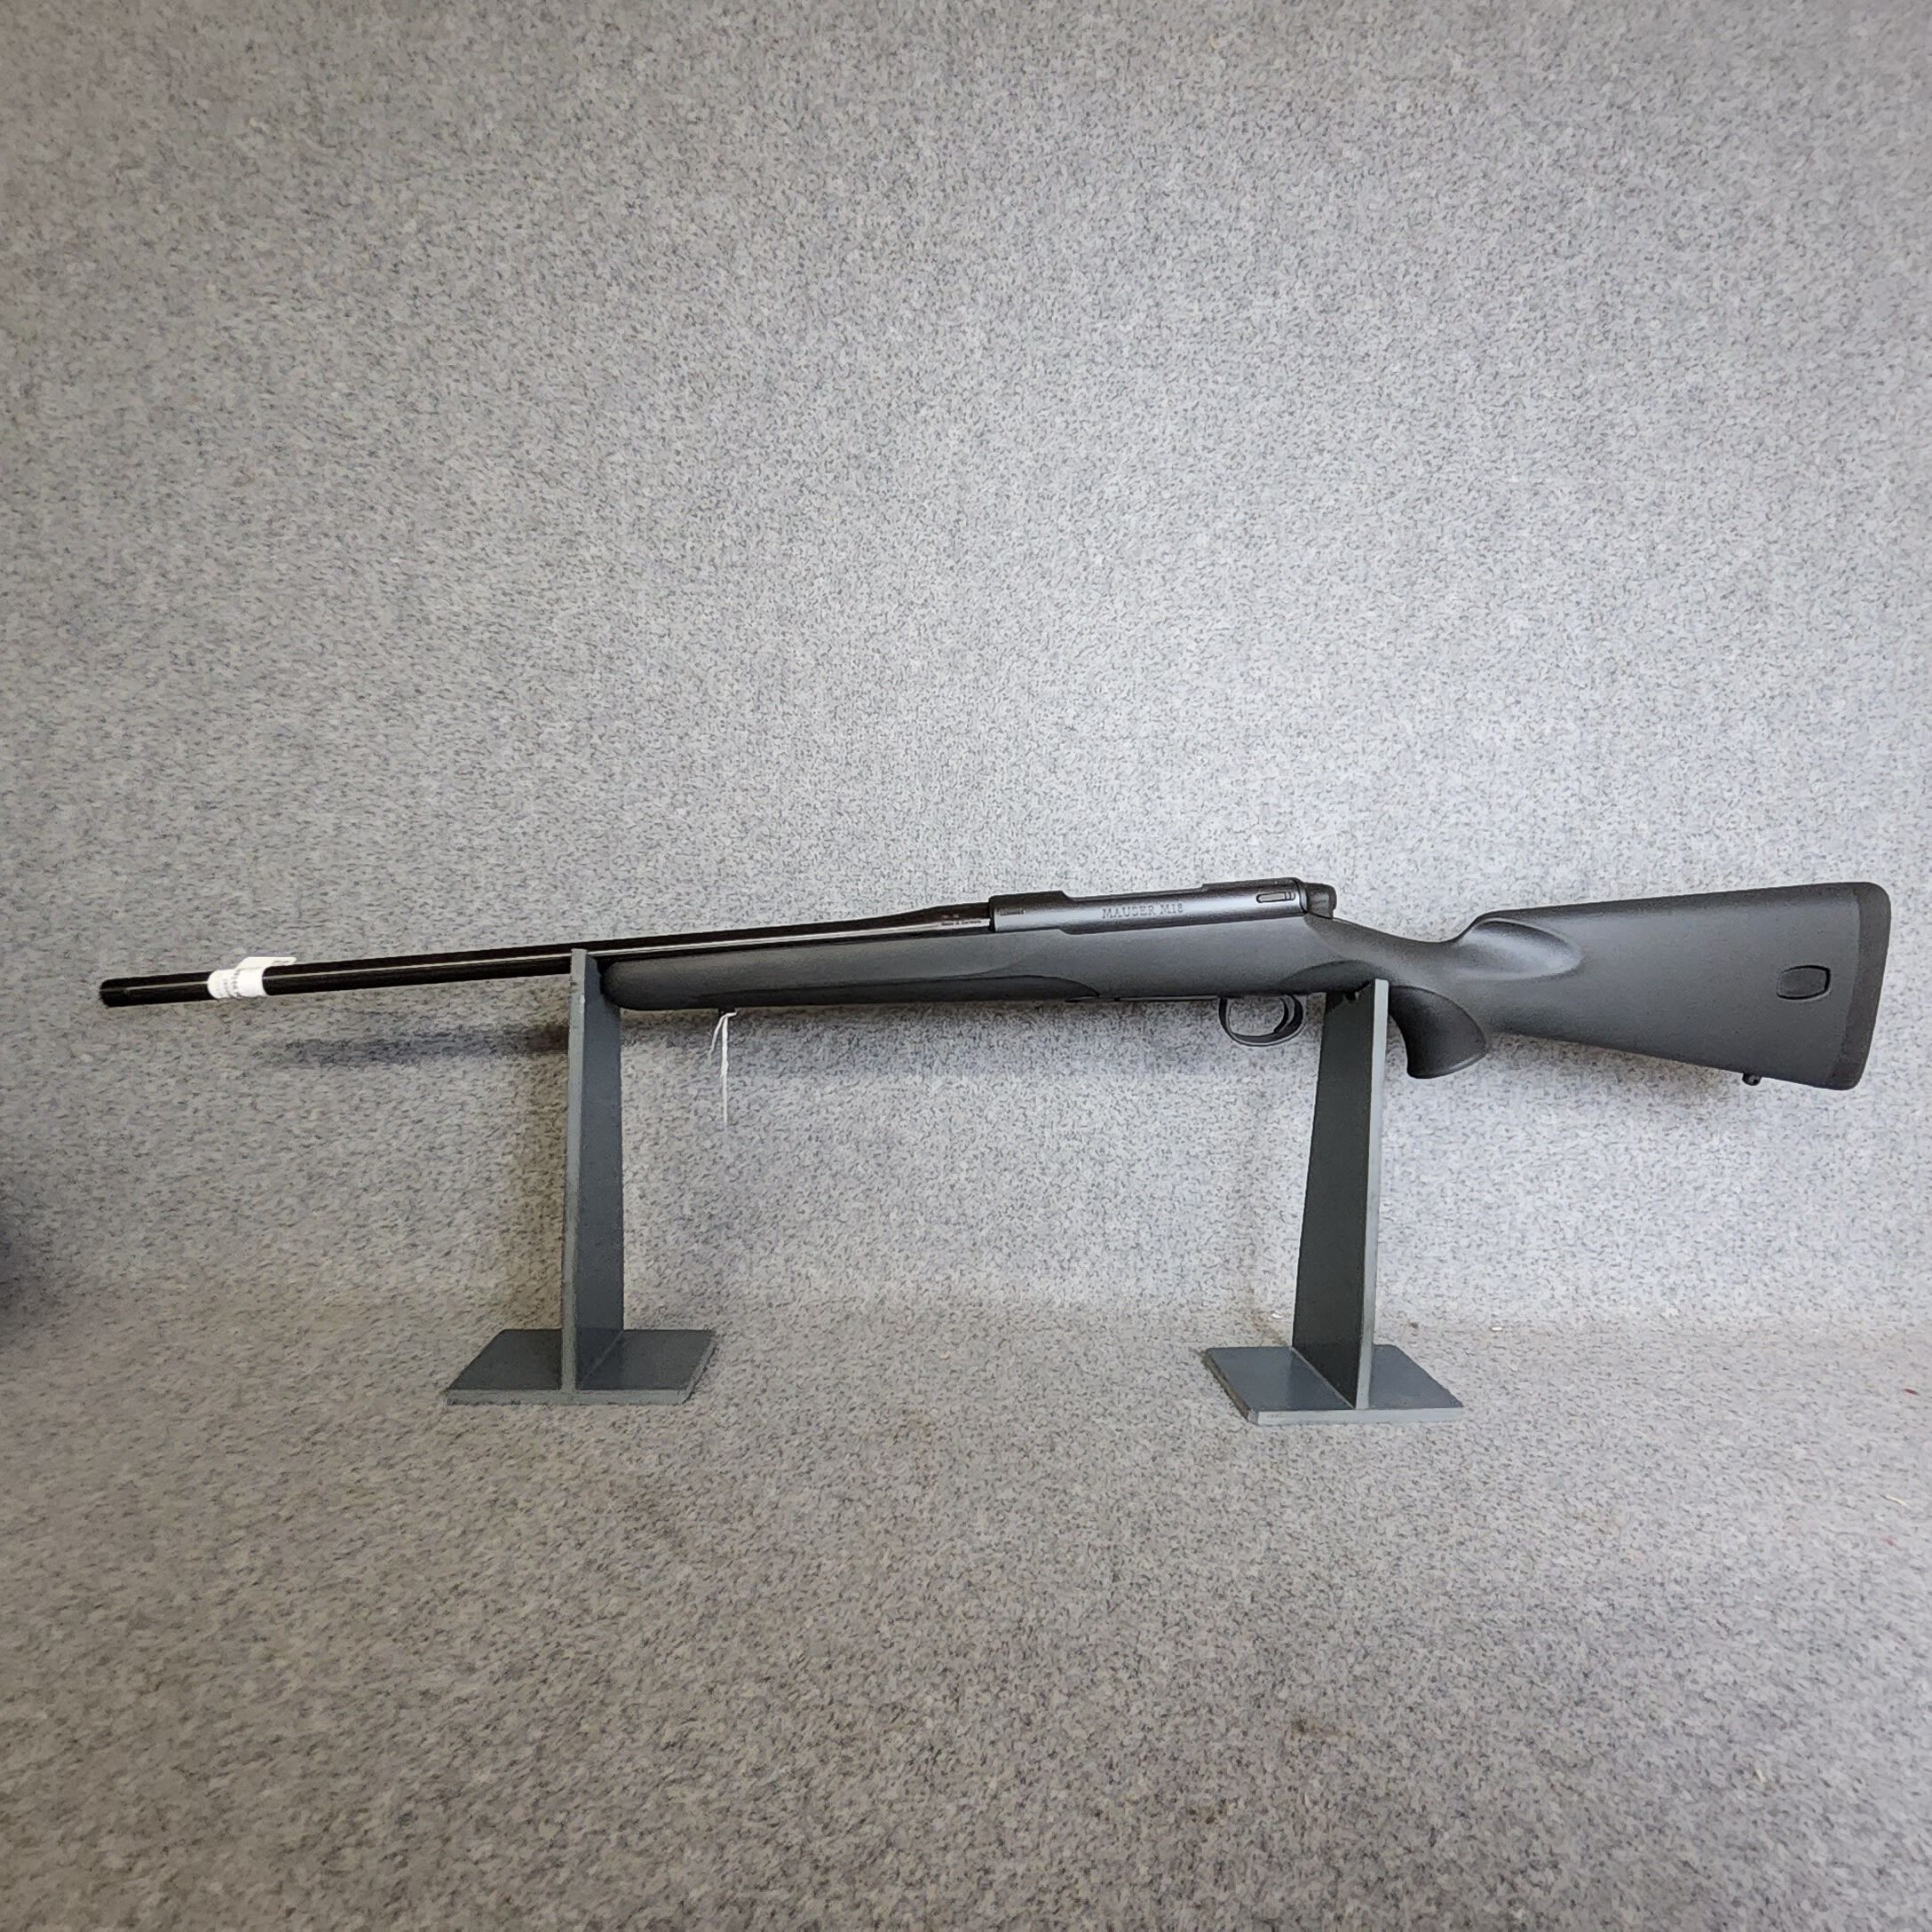 Mauser	 M18-  optional Paket mit DD Opt. ZF v2,5-10x56